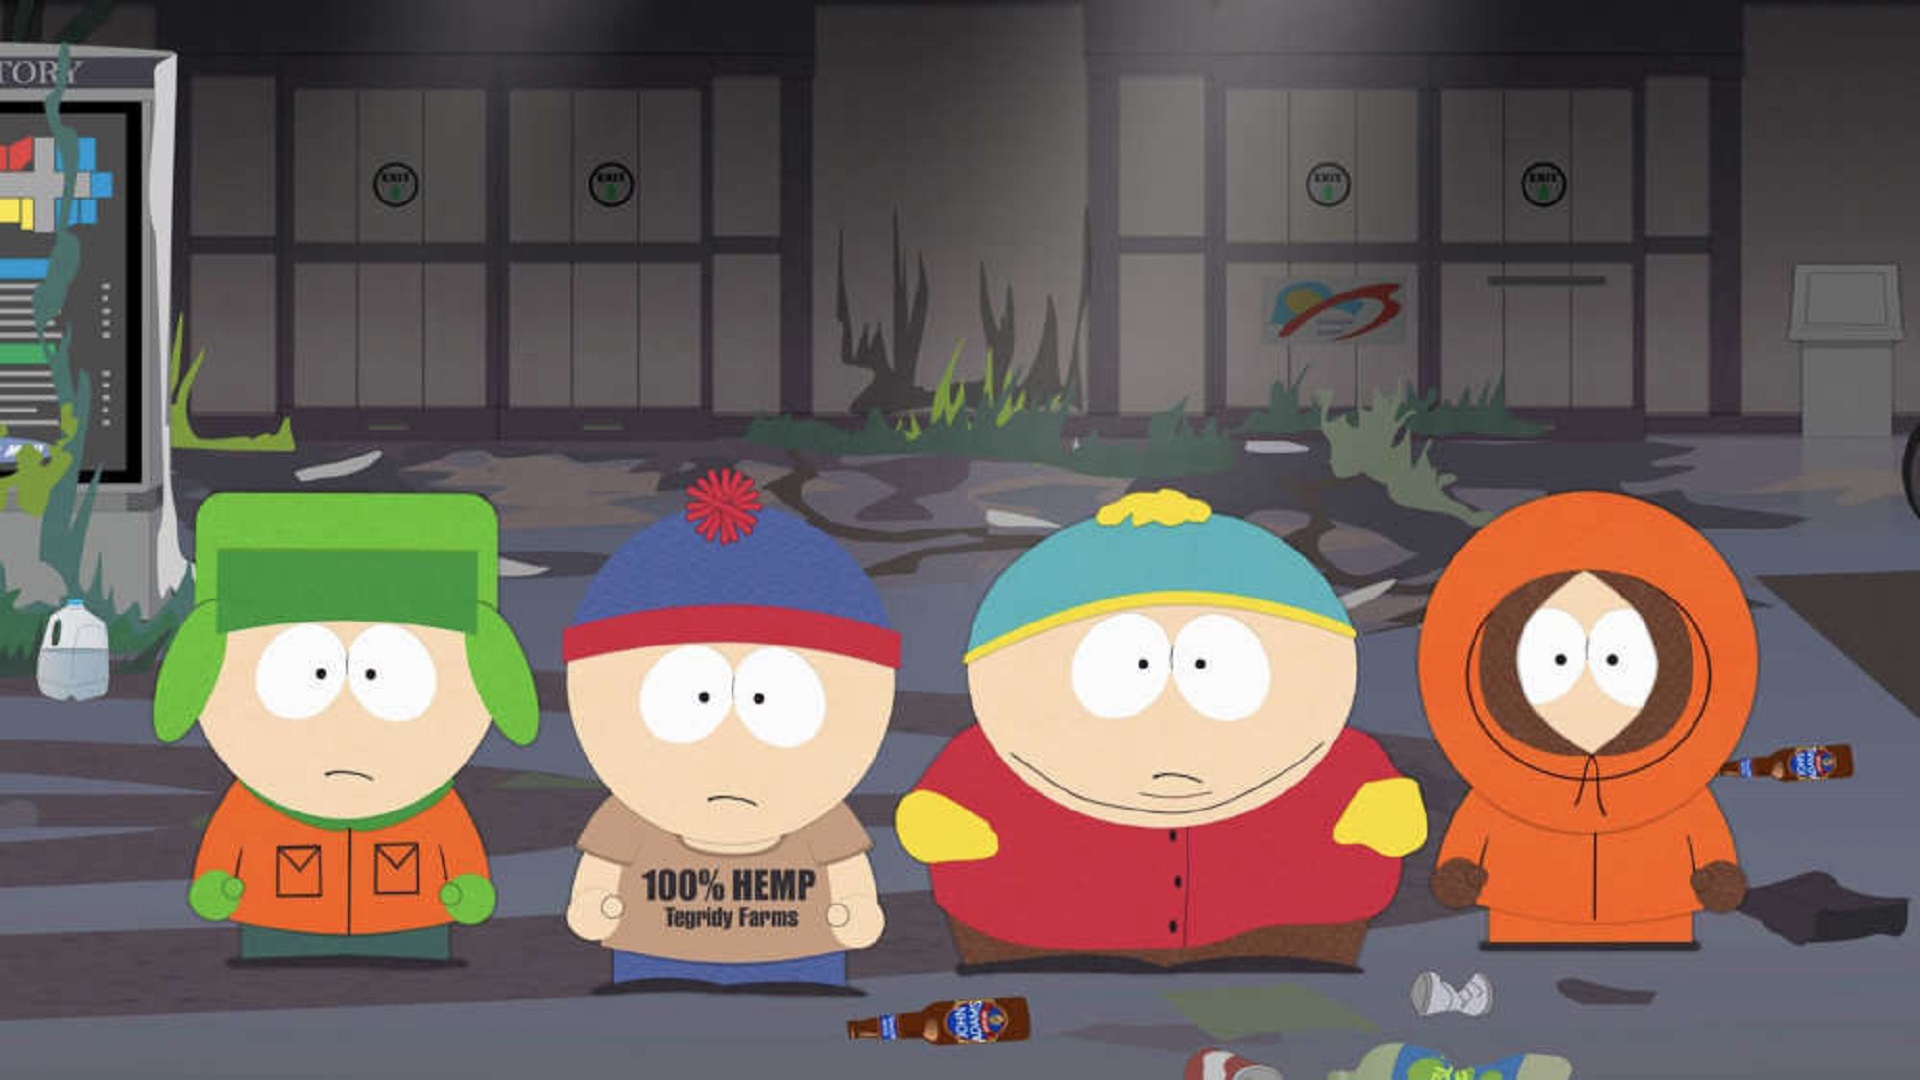 Vea el tráiler del especial de South Park que dará inicio a la temporada 24